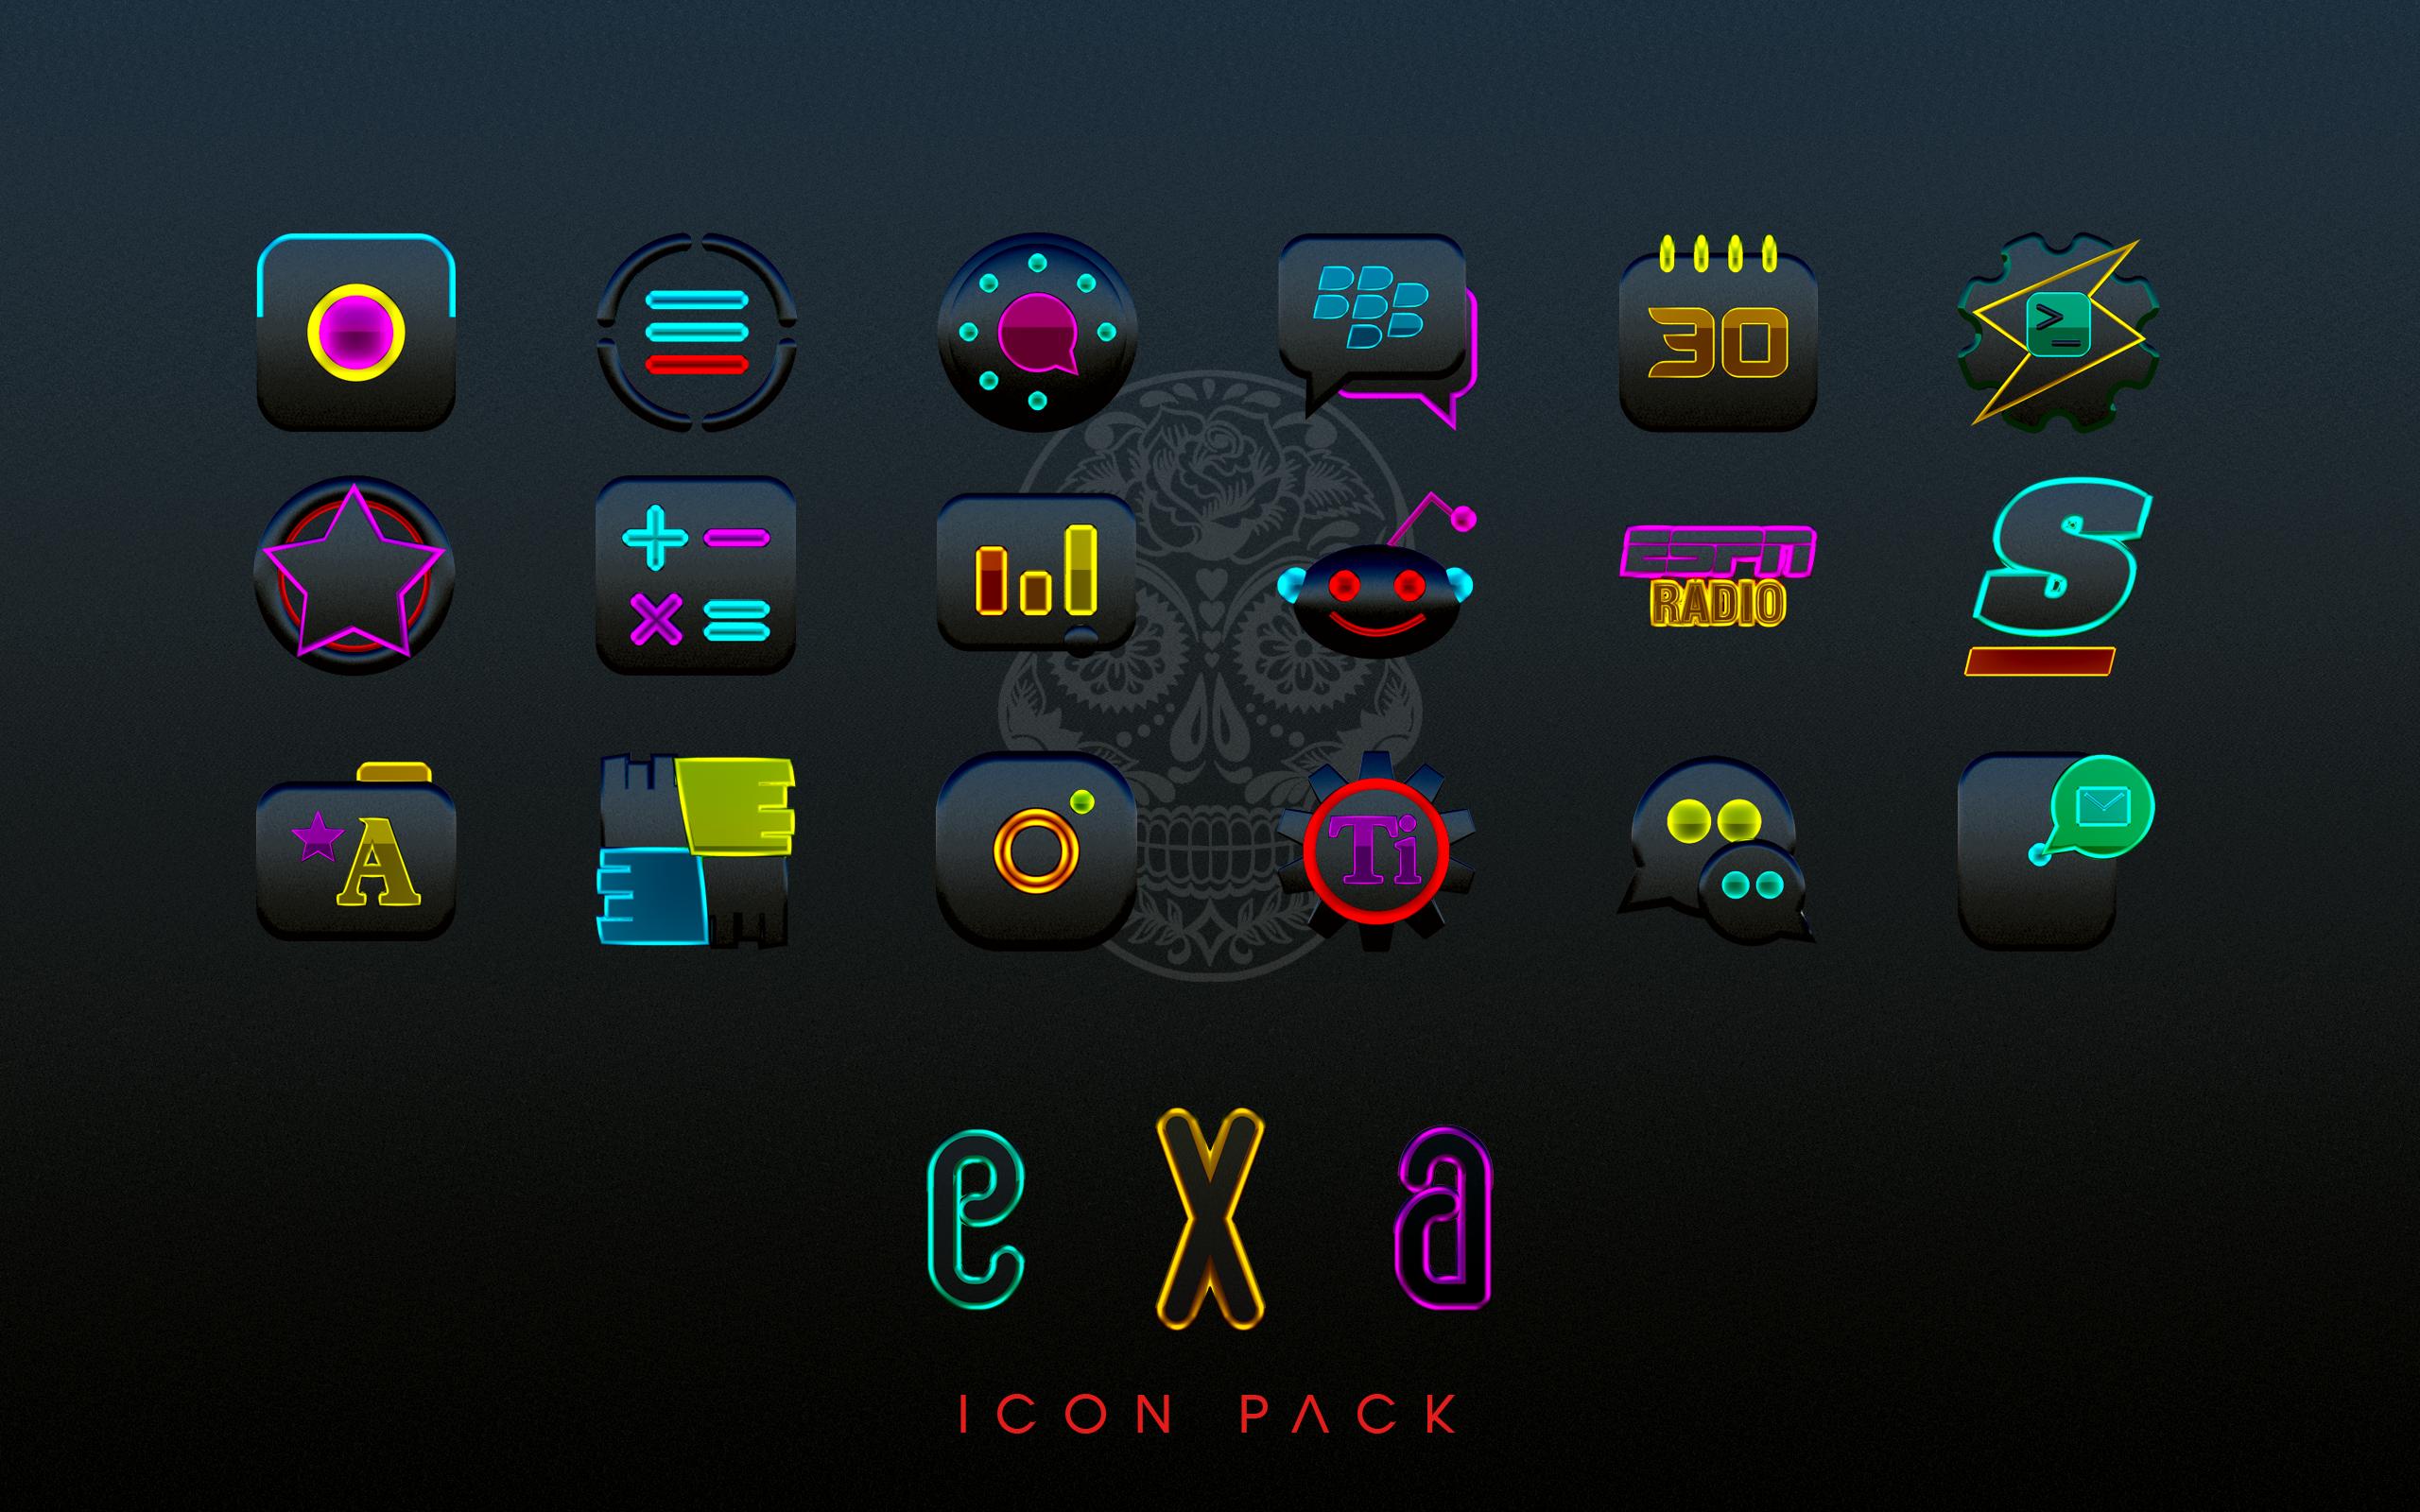 Icon pack studio pro. Неоновые иконки для приложений. Пак иконок для андроид неон. Неоновые значки приложений на ПК. Неоновые иконки для EMUI.